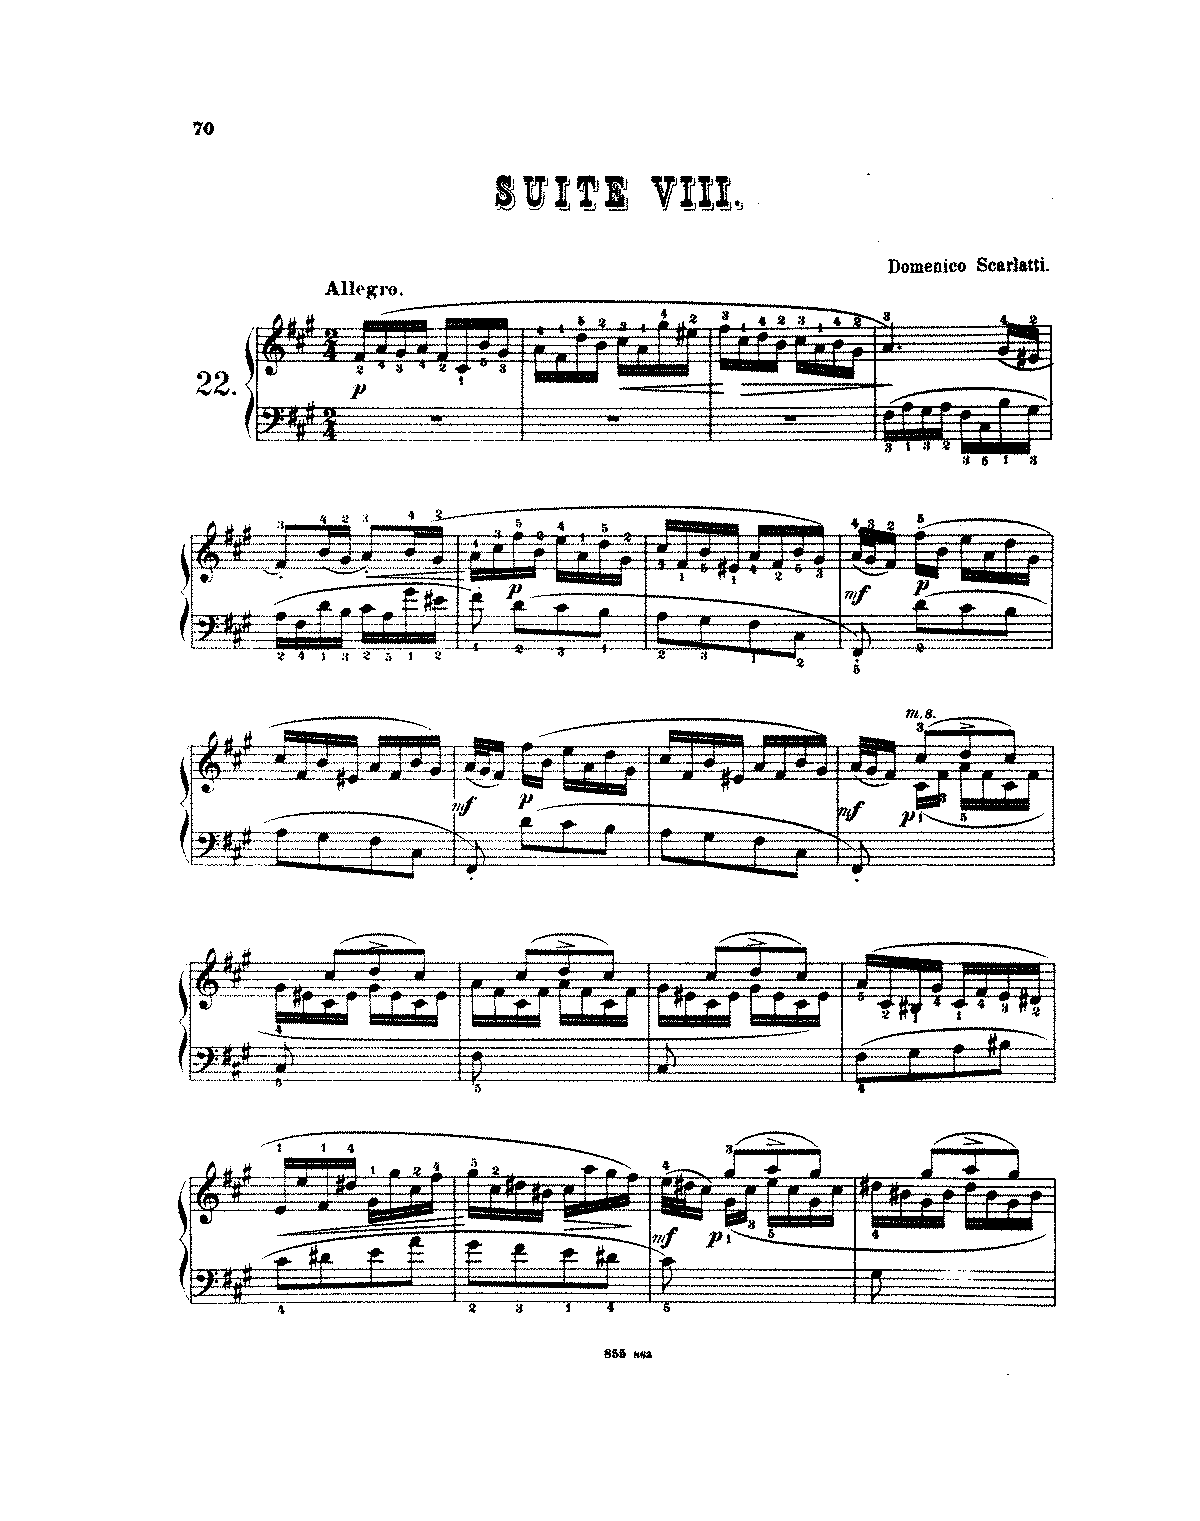 Keyboard Sonata in F-sharp minor, K.25 (Scarlatti, Domenico) - IMSLP ...